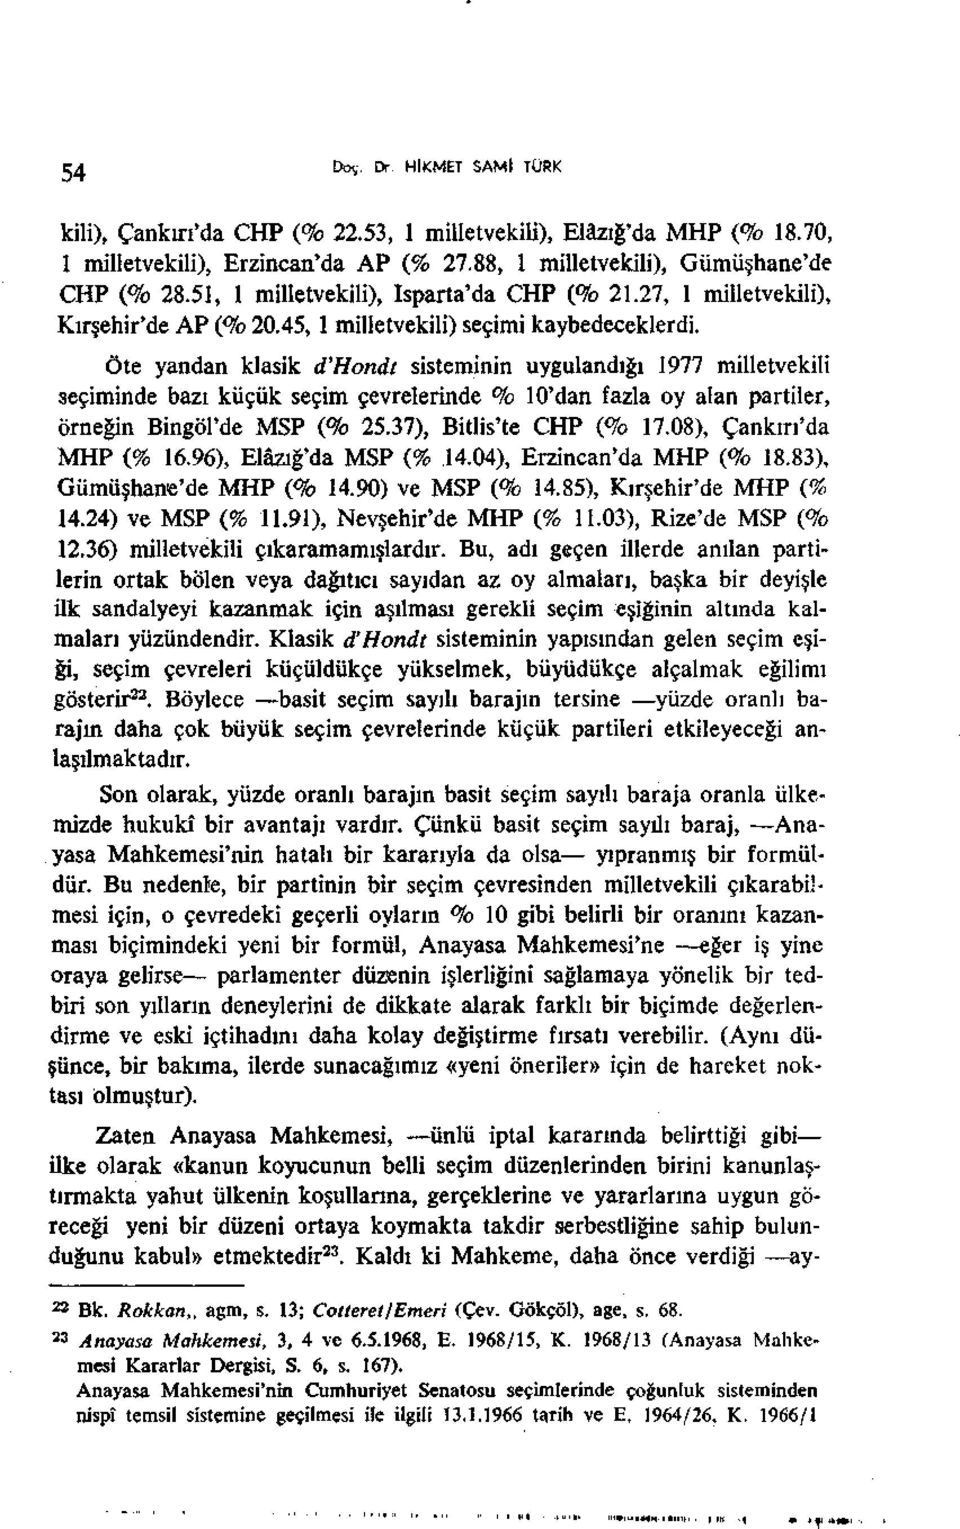 Öte yandan klasik d'hondt sisteminin uygulandığı 1977 milletvekili seçiminde bazı küçük seçim çevrelerinde % 10'dan fazla oy alan partiler, örneğin Bingöl'de MSP (% 25.37), Bitlis'te CHP (% 17.